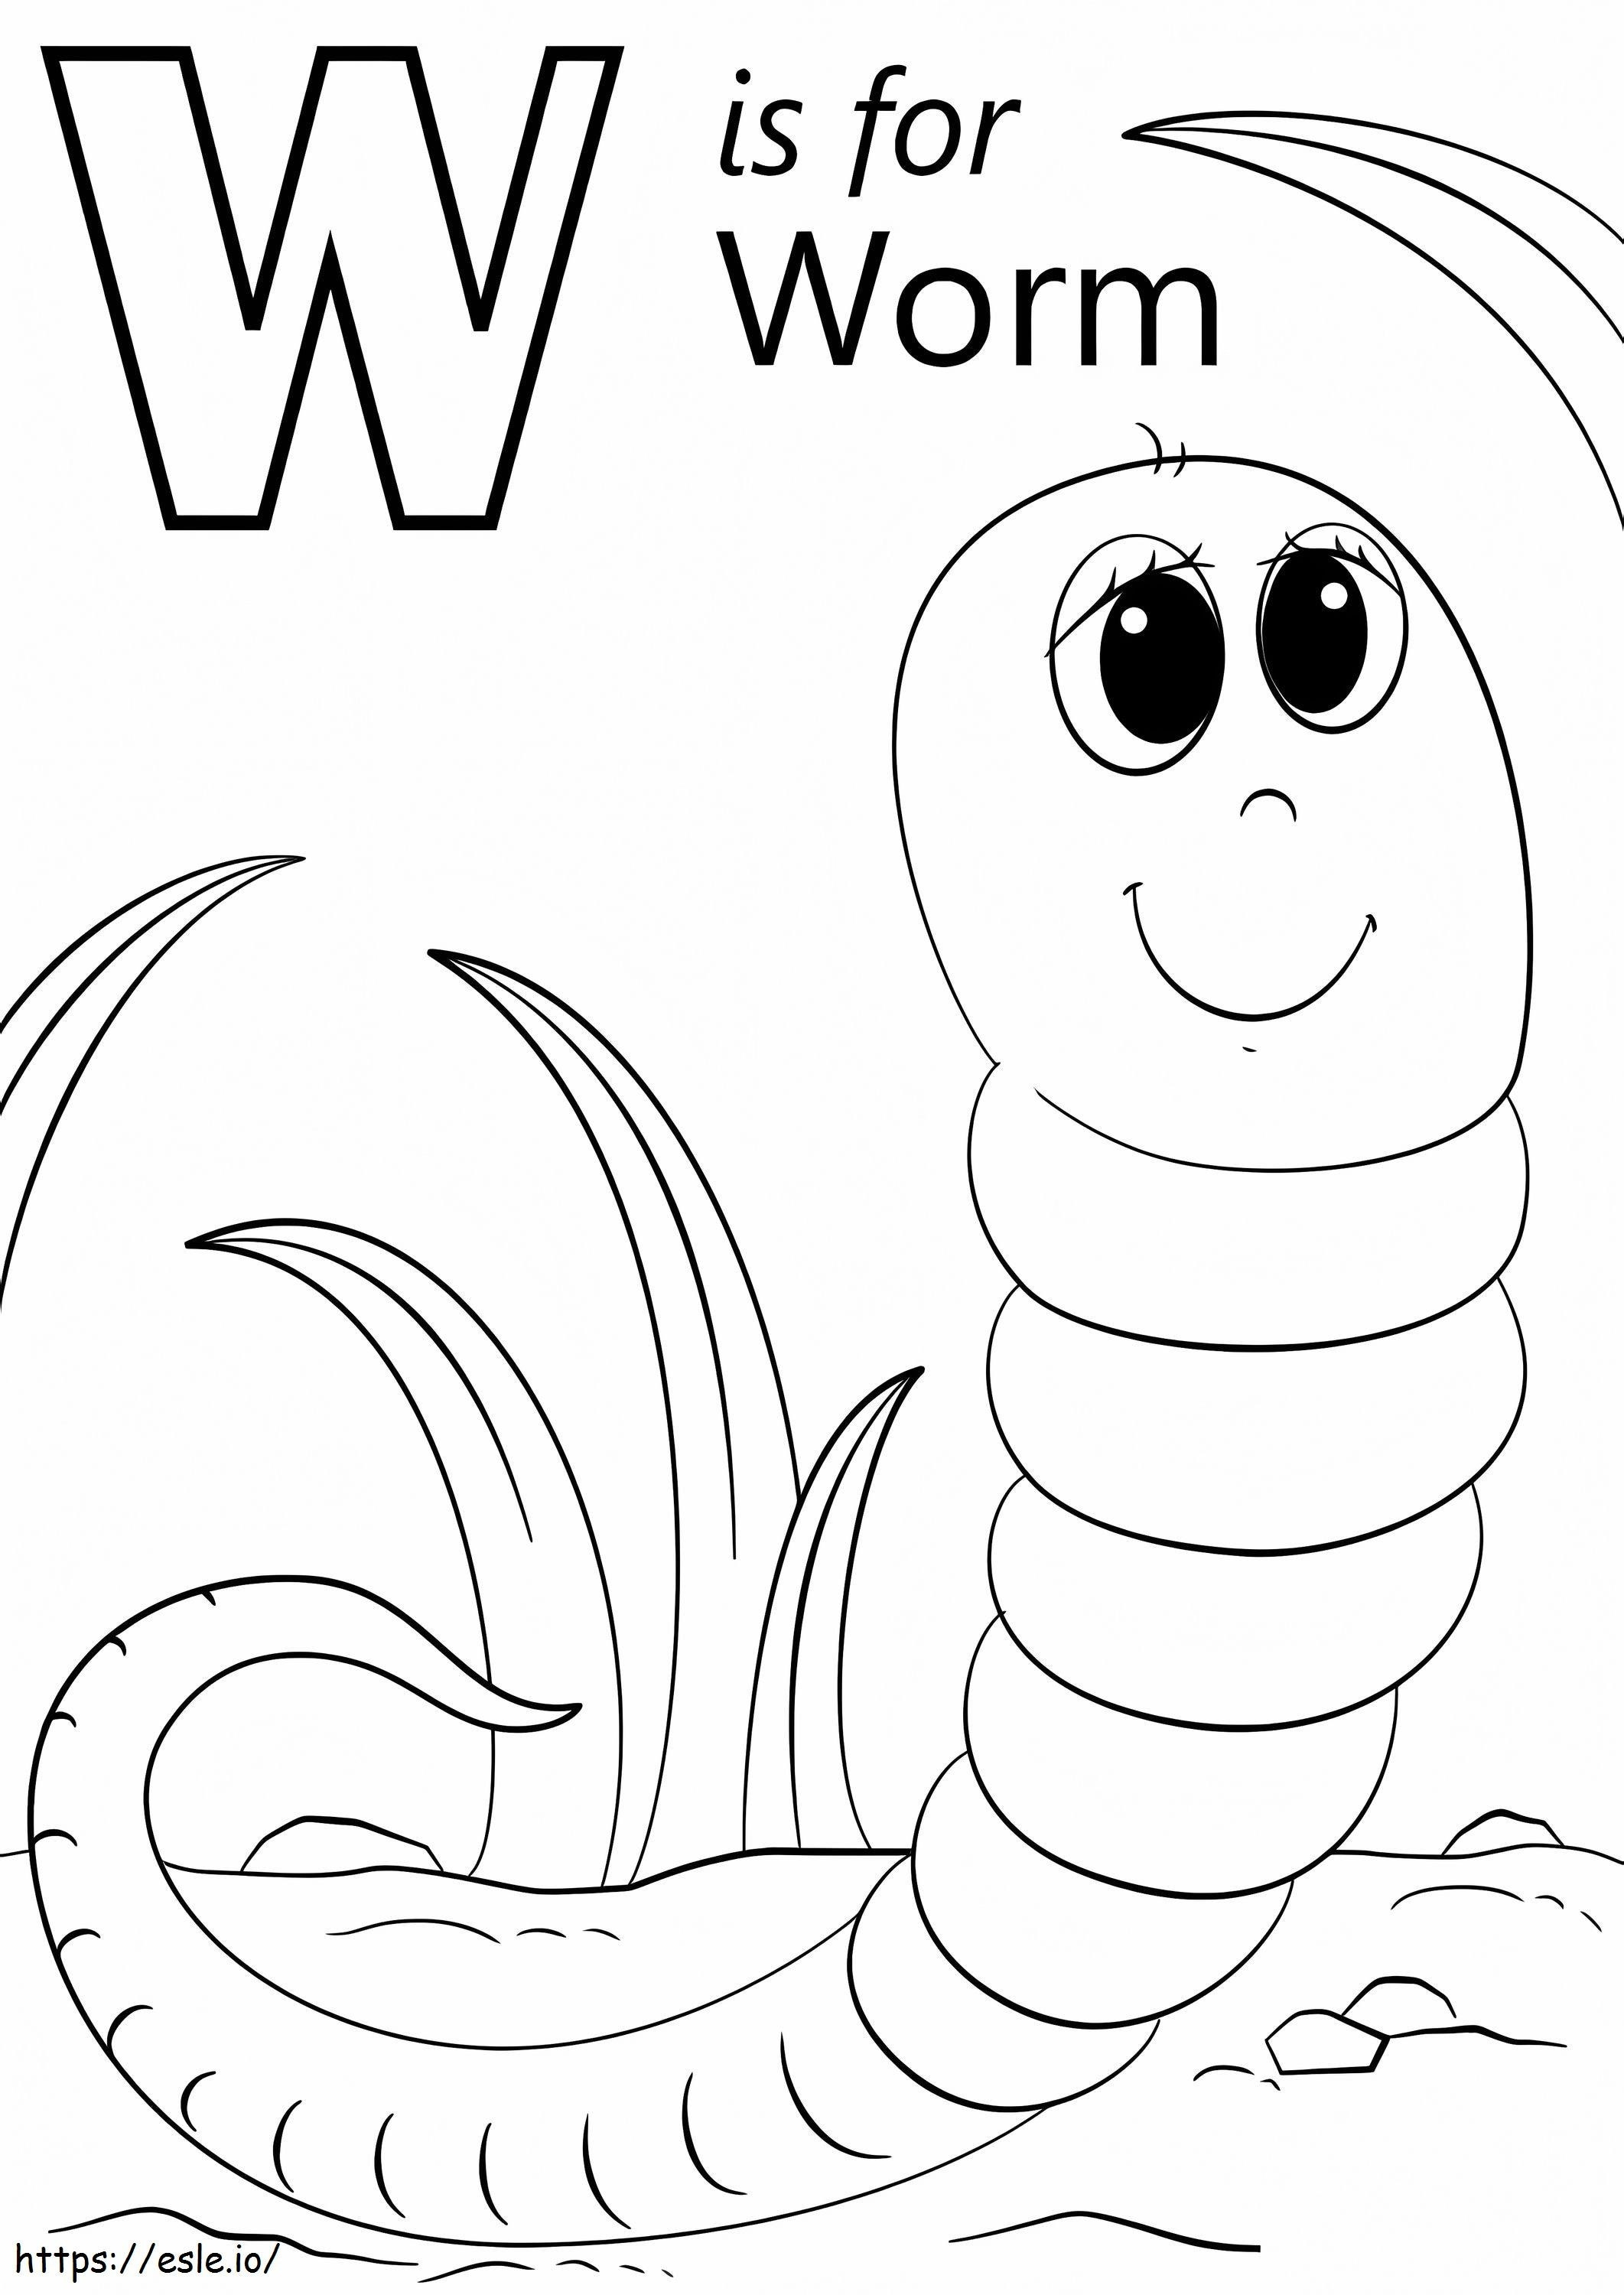 W For Worm kifestő